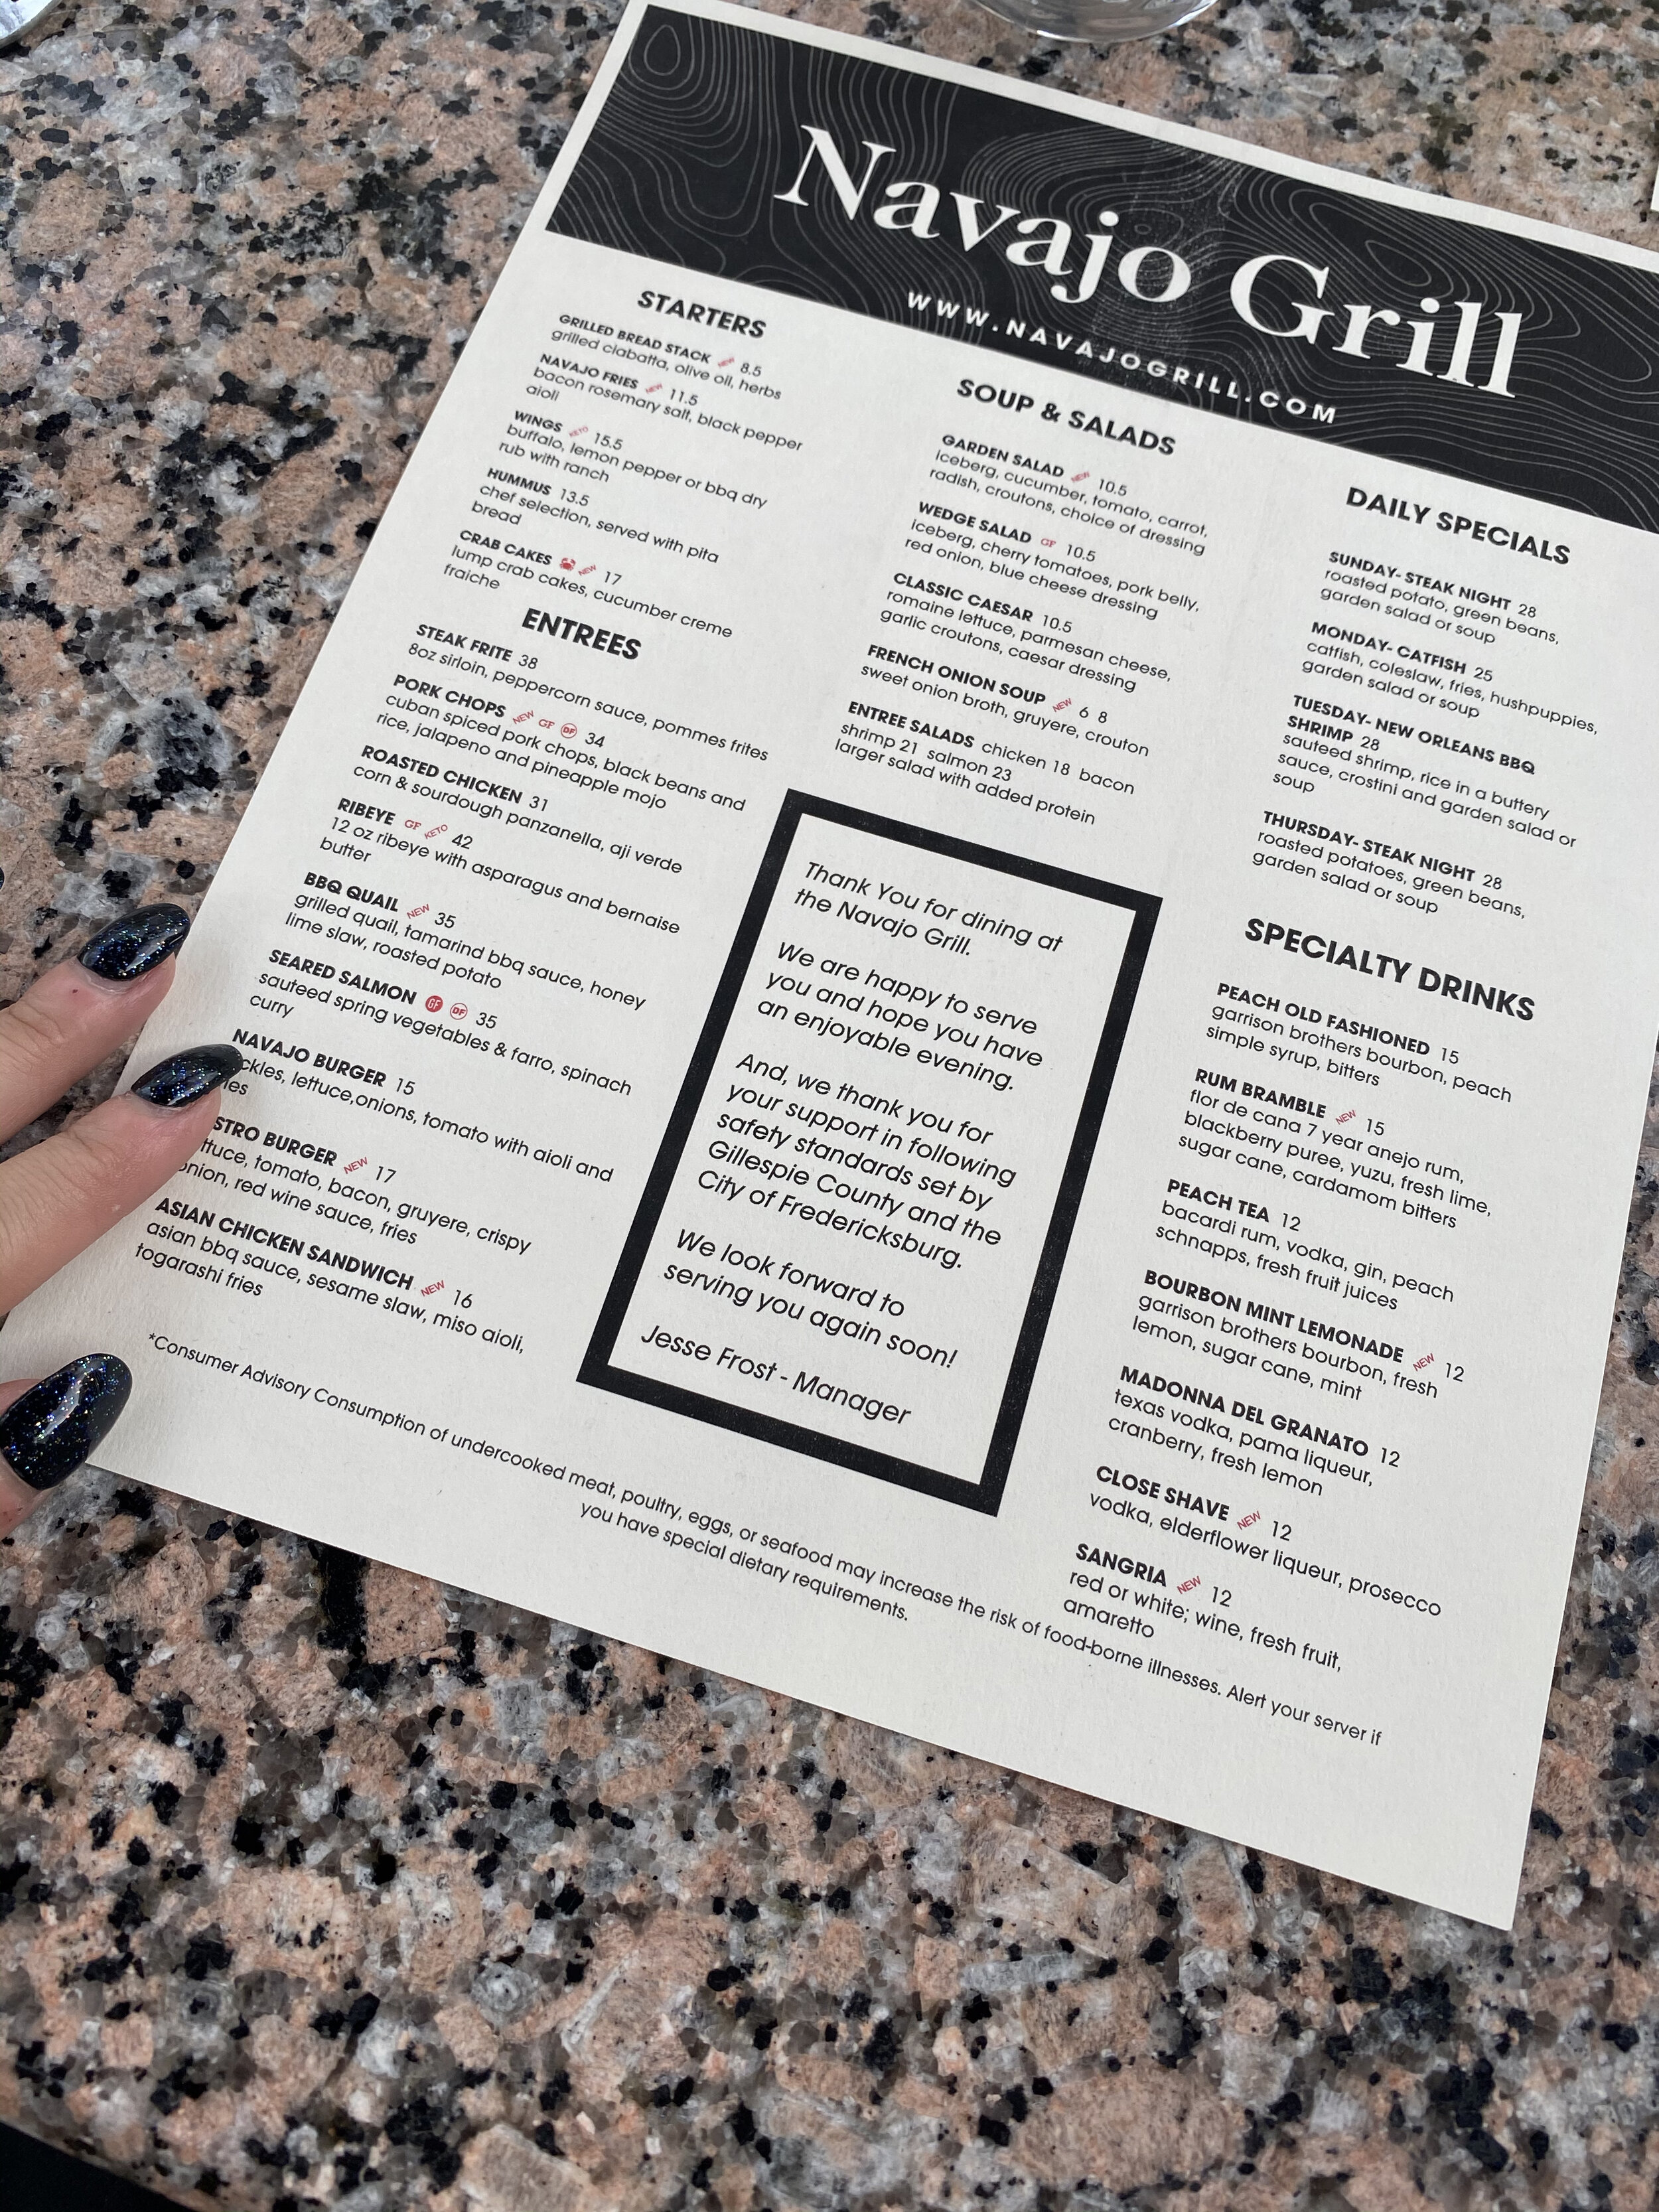 menu at the Navajo Grill